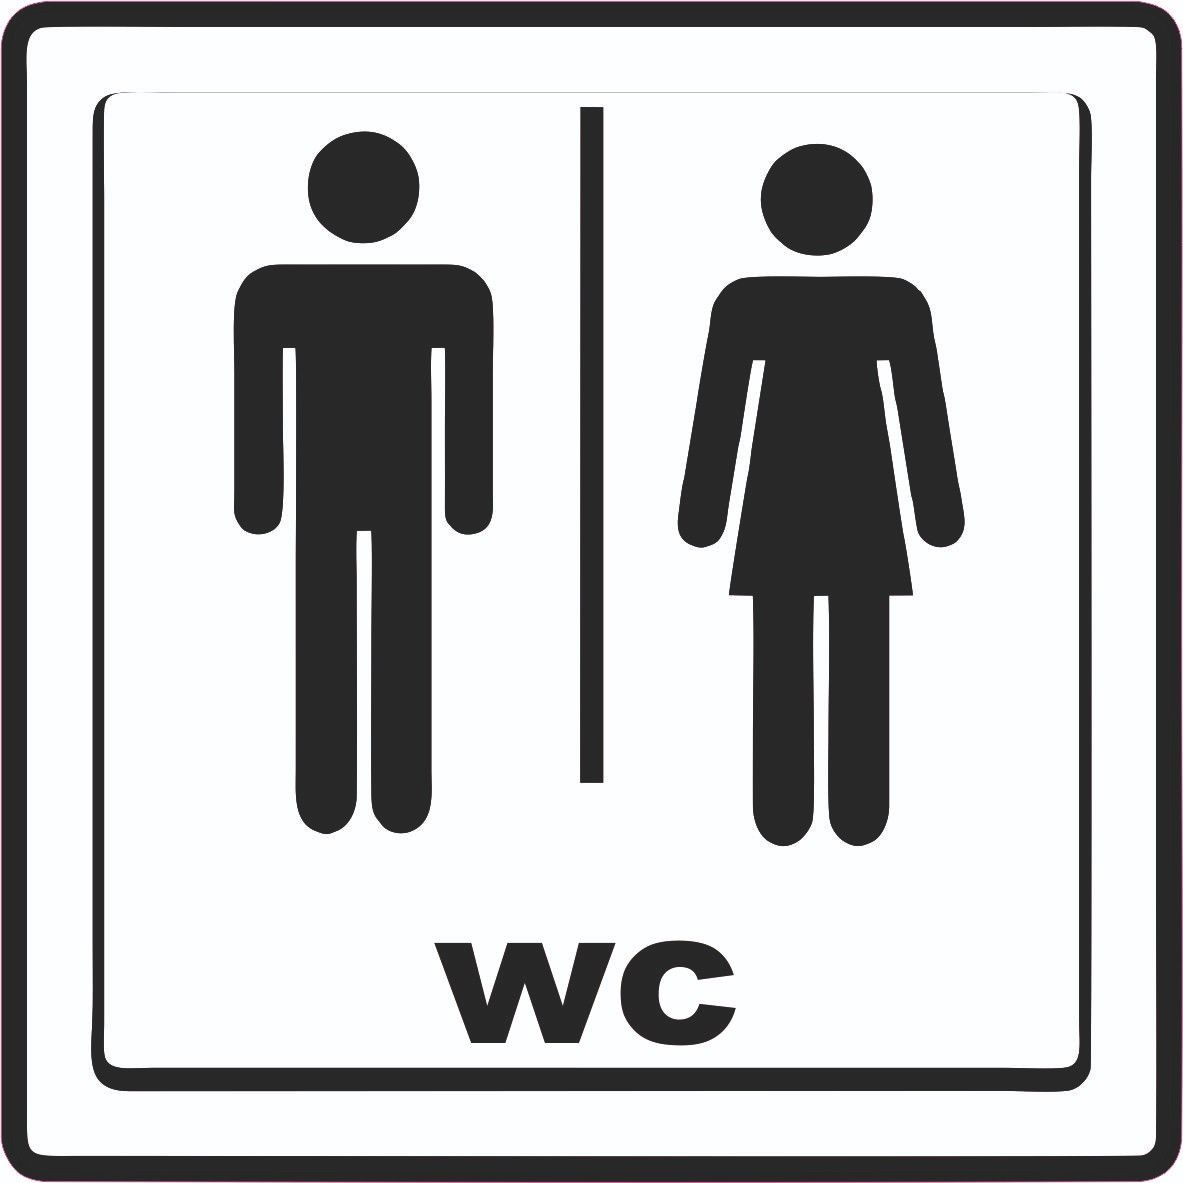 Naklejka Nalepka Informacyjna Oznaczenie Wc Toalety 10X10 Cm